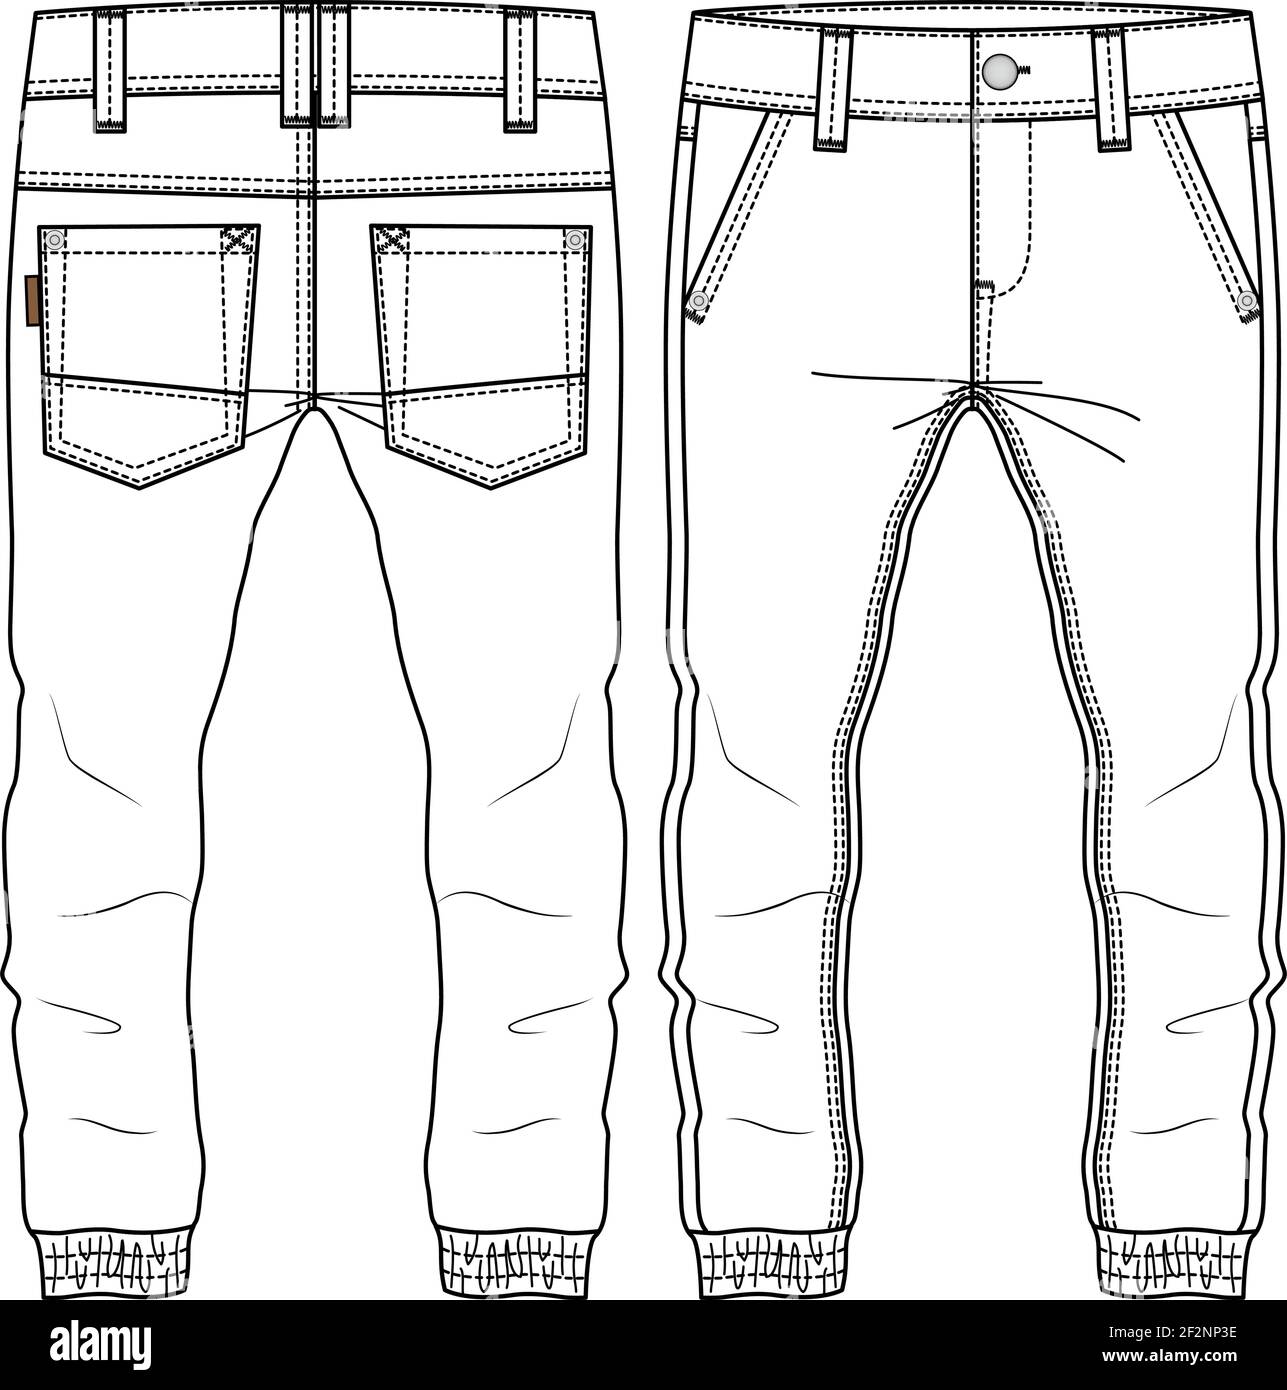 Männer Jungen Hose Mode flach Skizze Vorlage. Technische Mode Illustration. Gewobenes CAD Stock Vektor